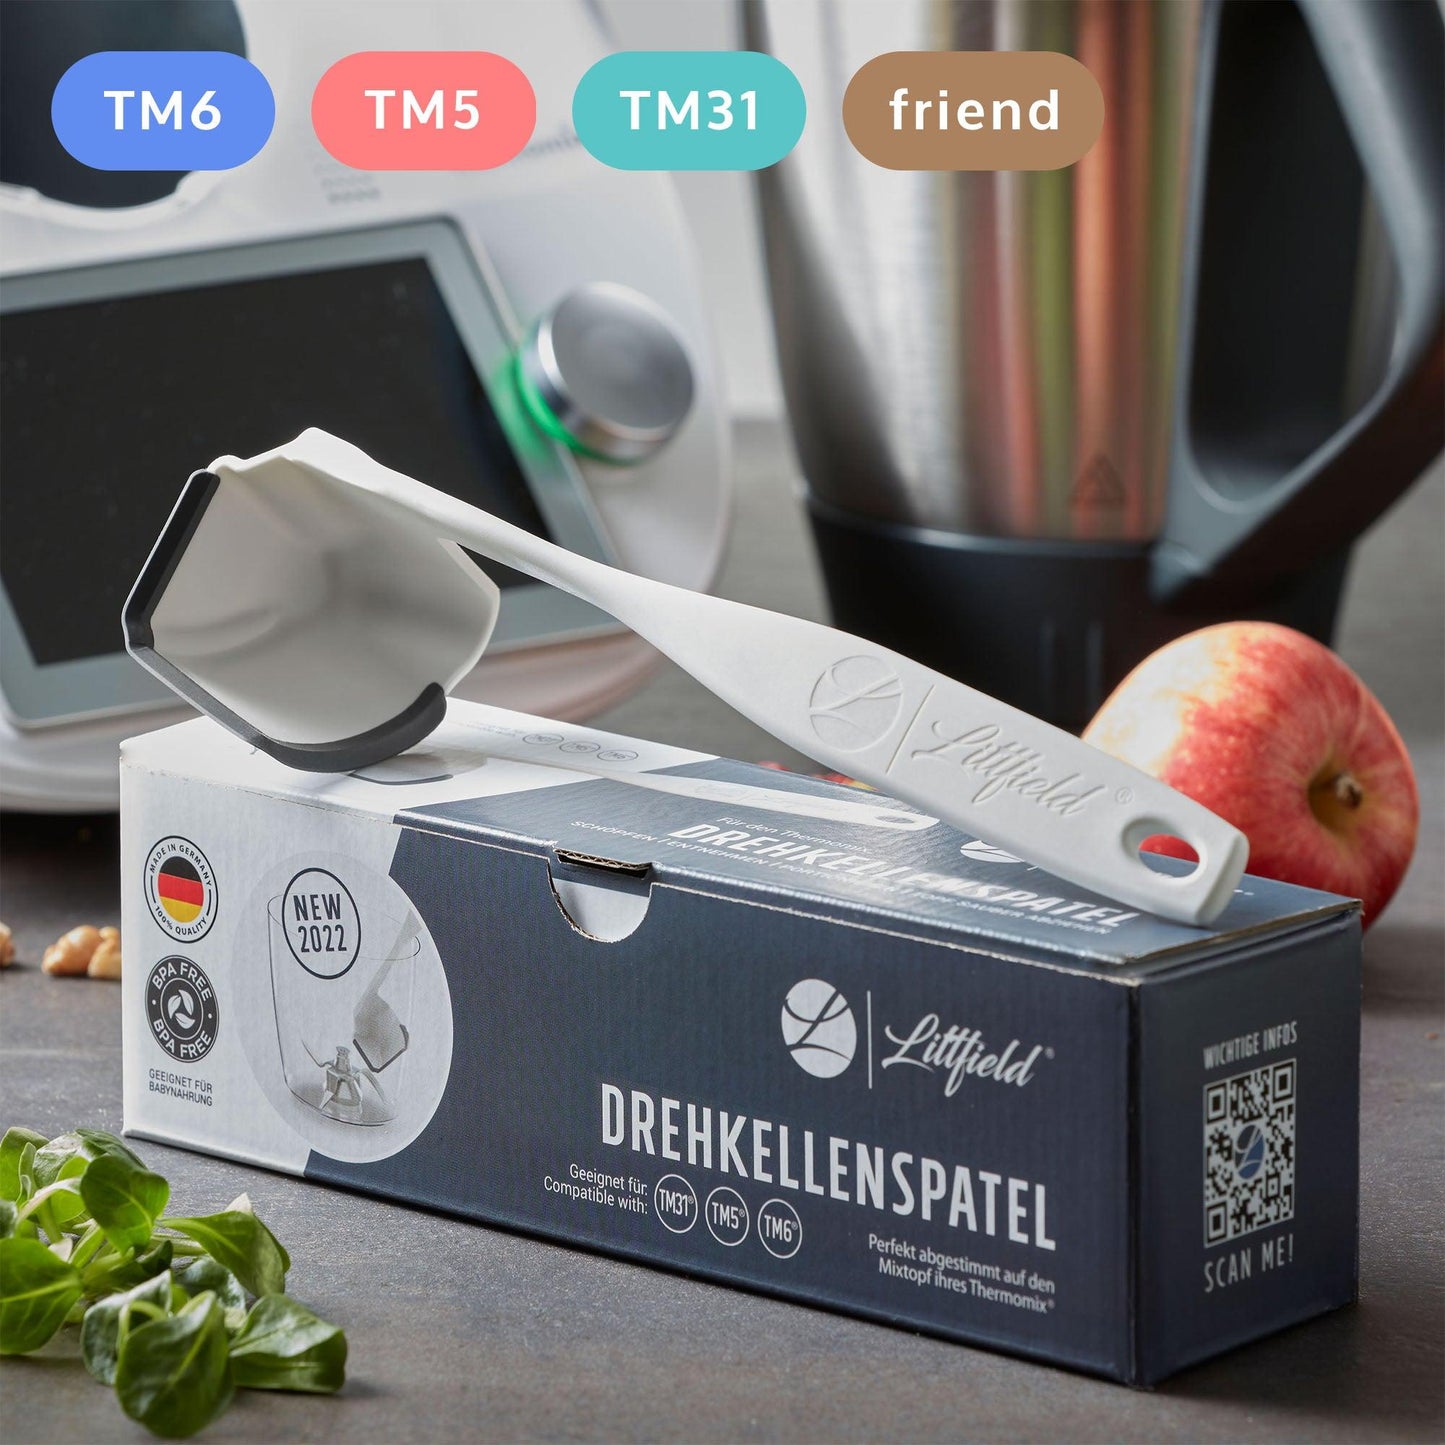 Littfield Drehspatel - Zubehör für Thermomix TM6 TM5 TM31 TM Friend Küchenmaschine - Flexibel & elastische Spatel-Lippe